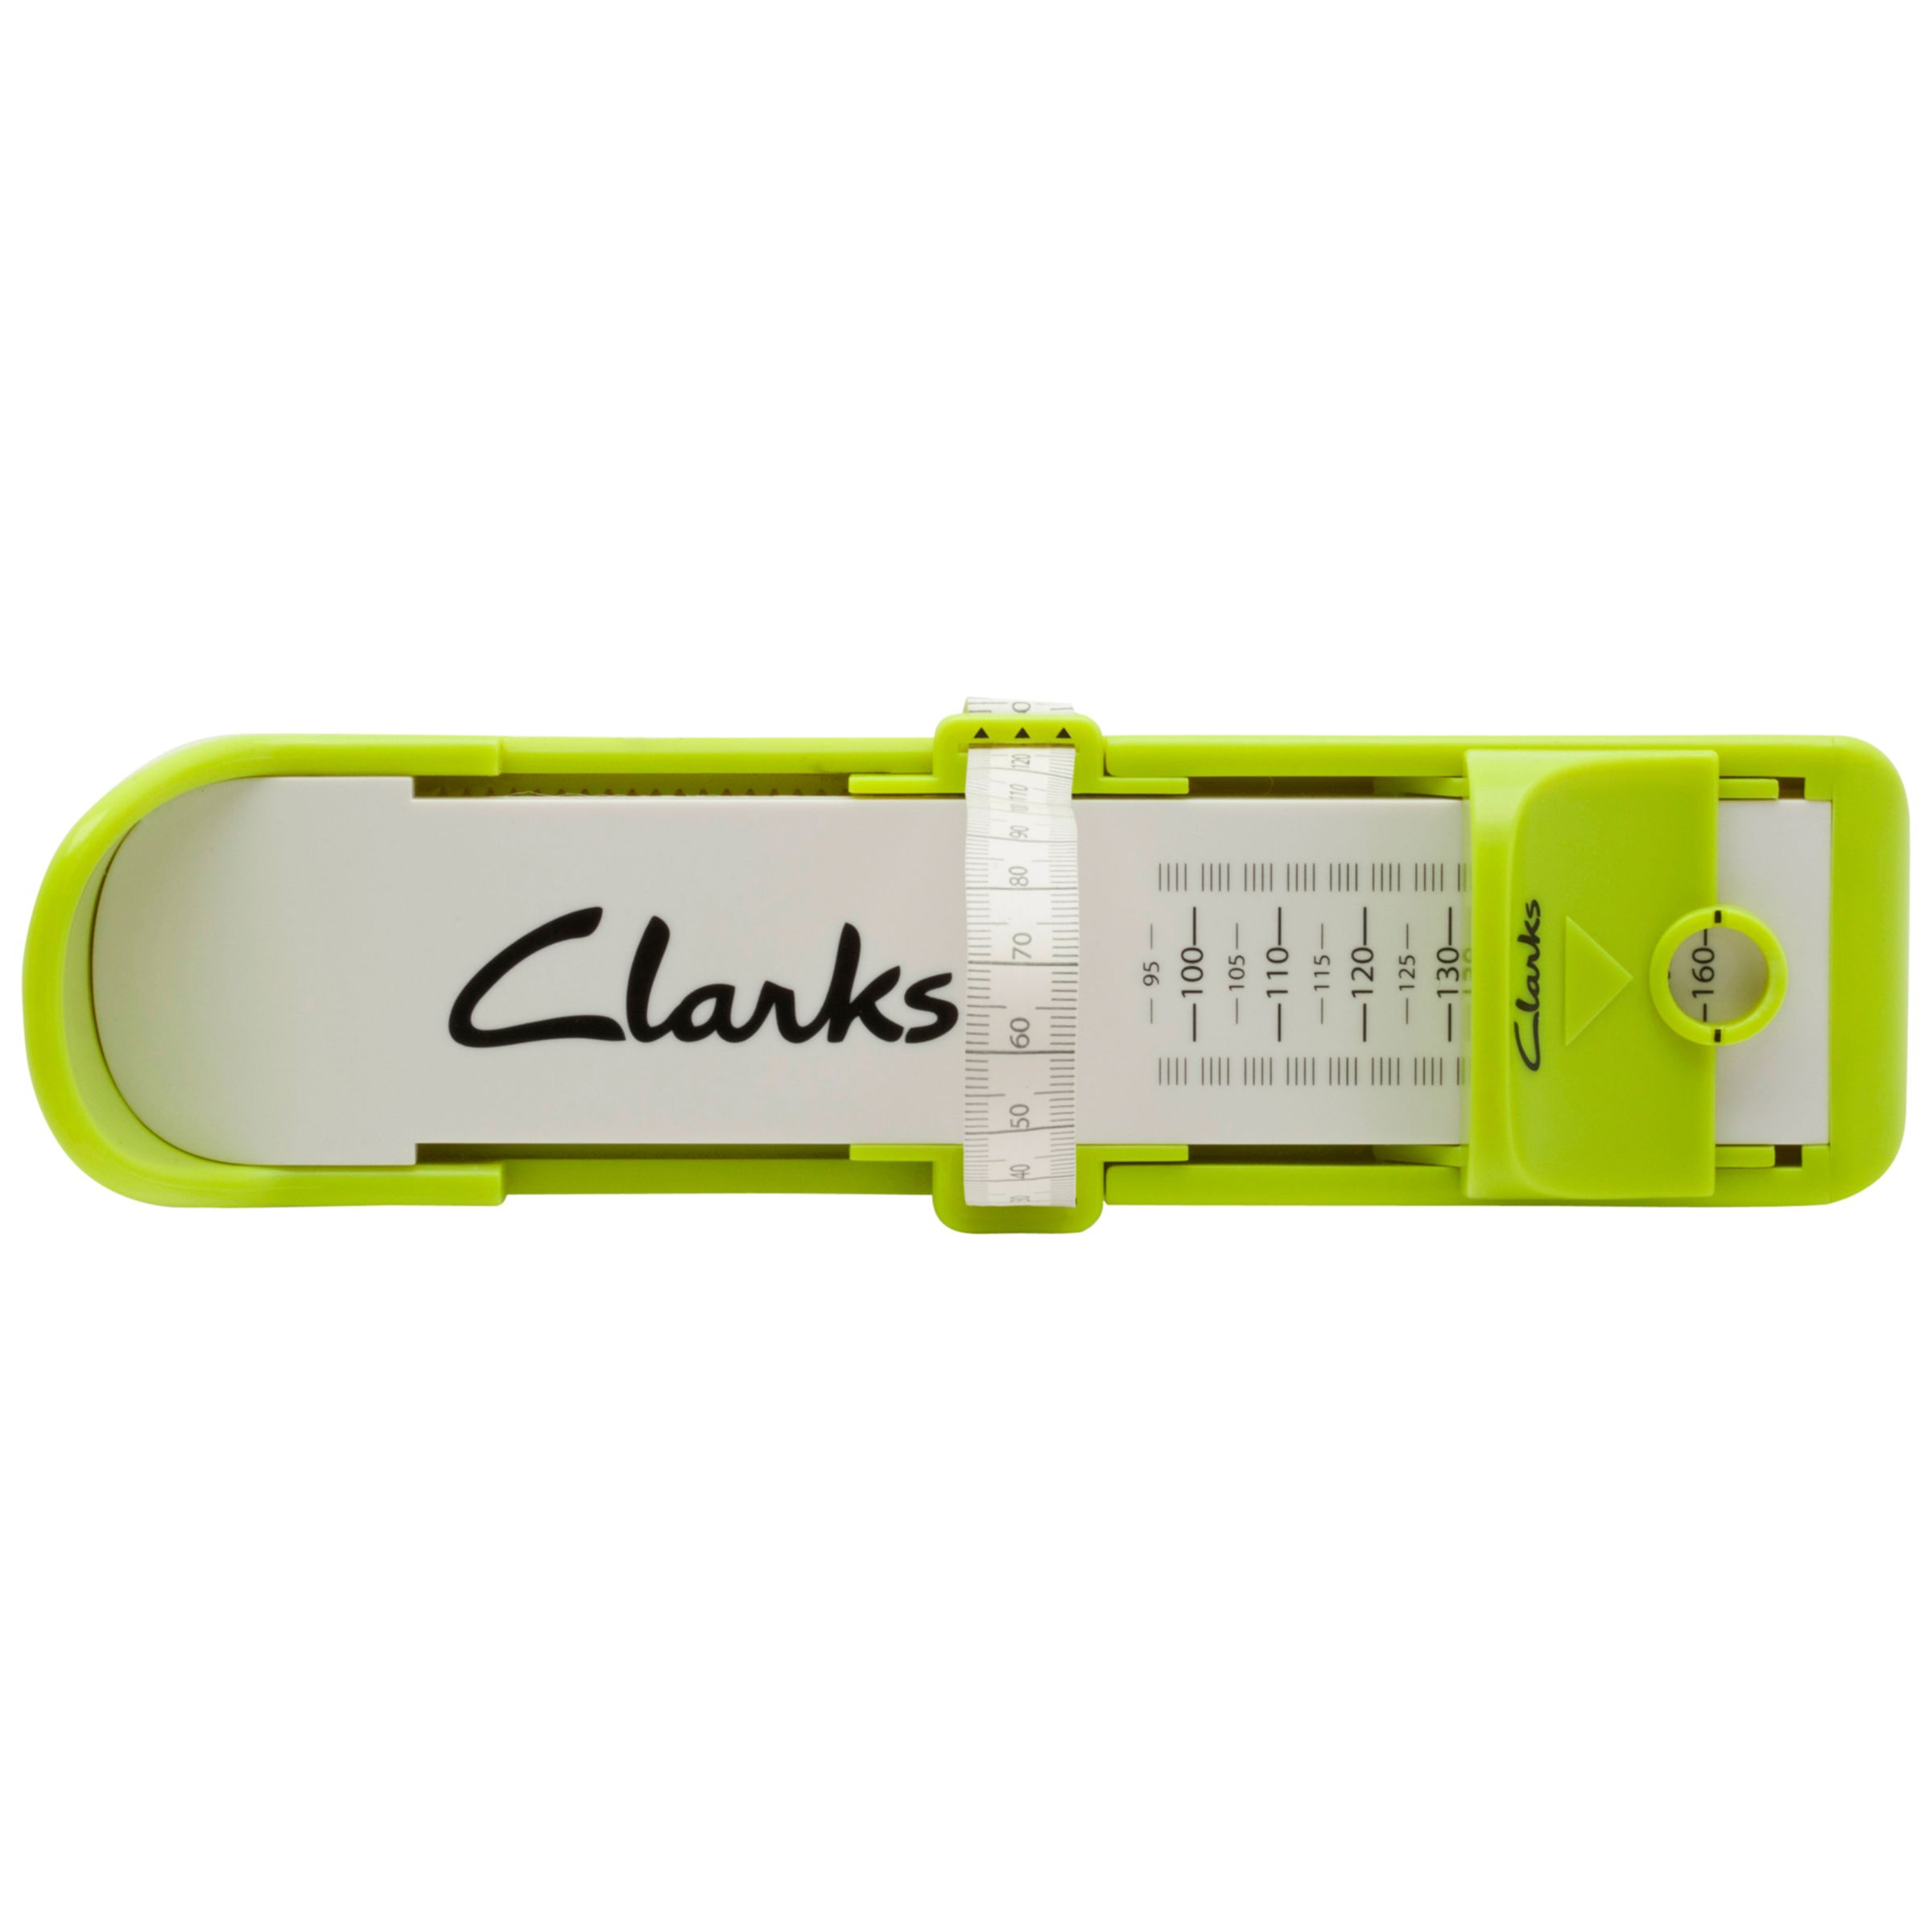 clarks shoe gauge